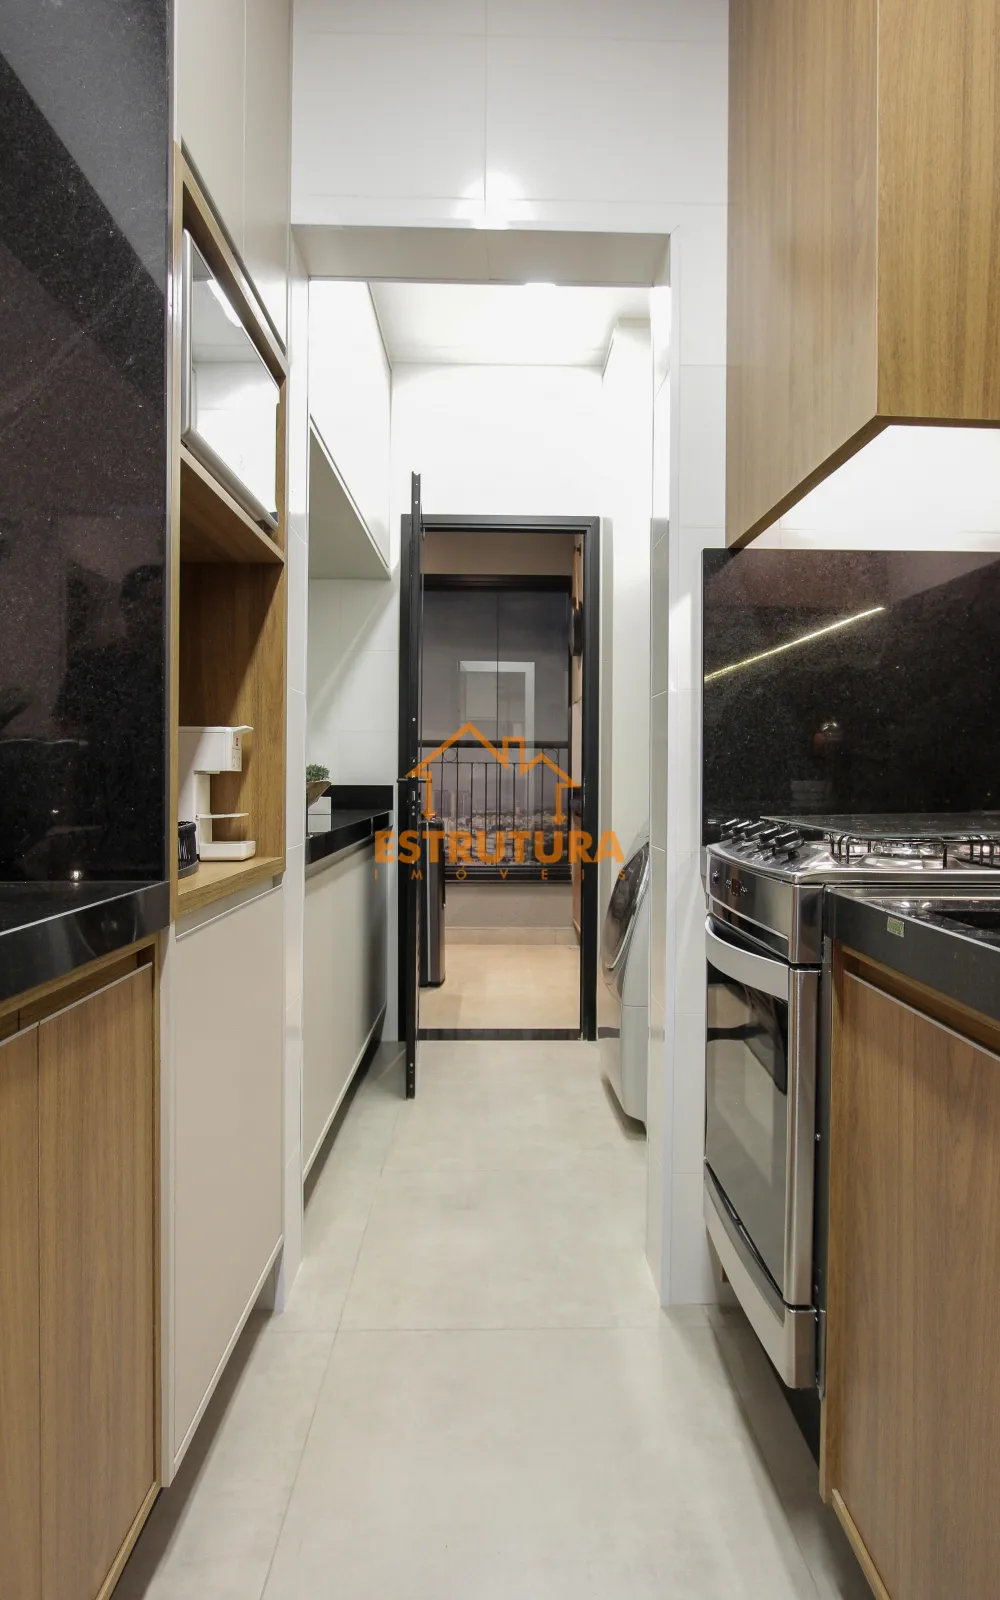 Comprar Residencial / Apartamento em Rio Claro - Foto 6